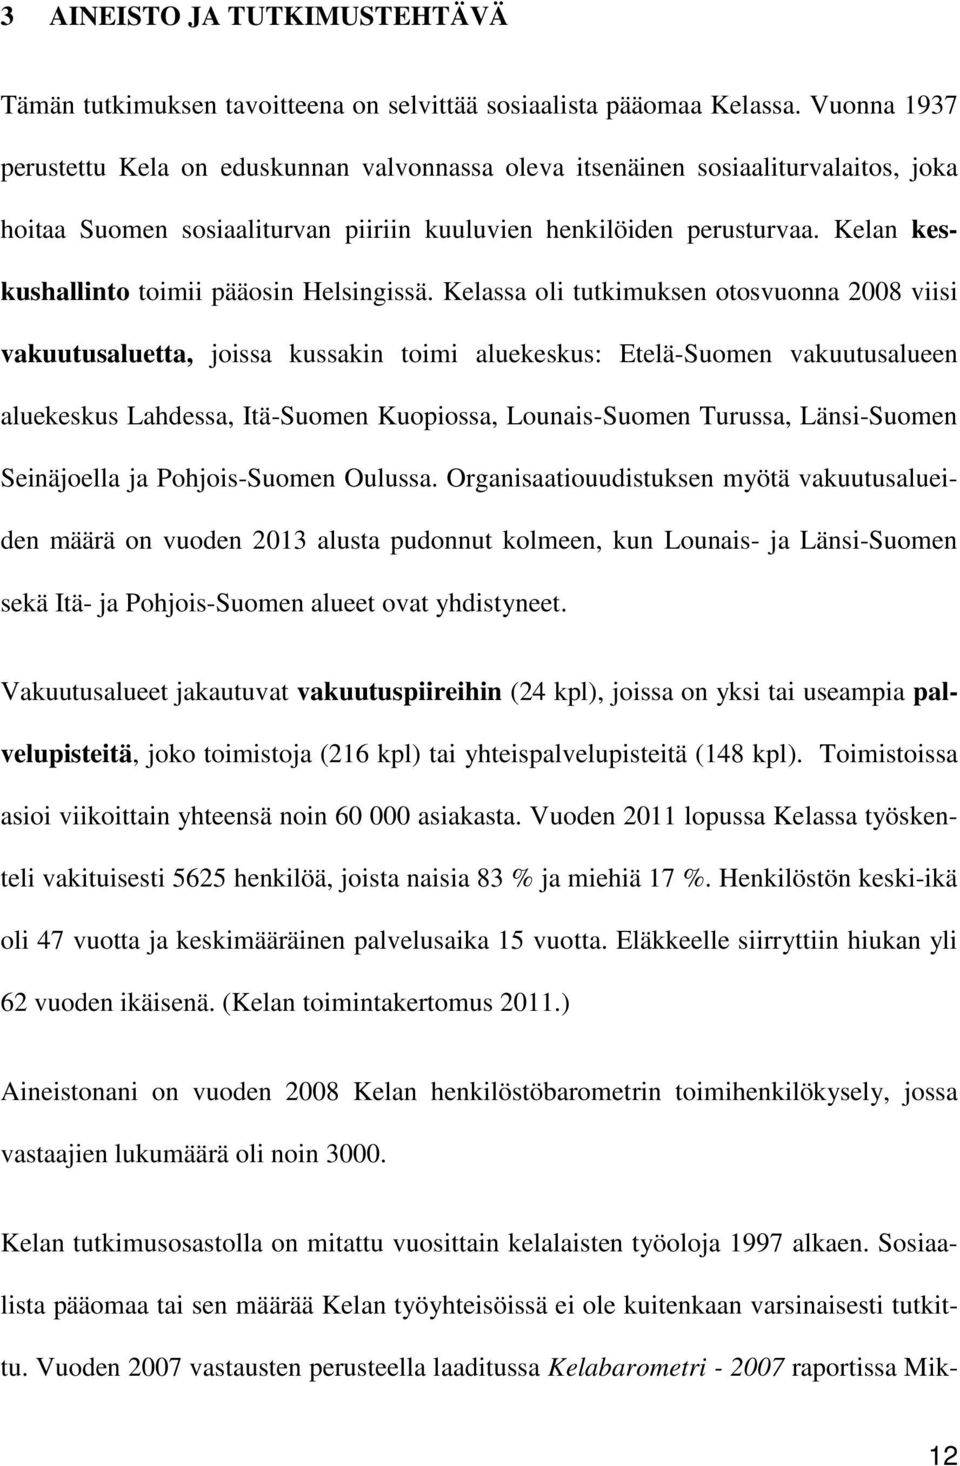 Kelan keskushallinto toimii pääosin Helsingissä.